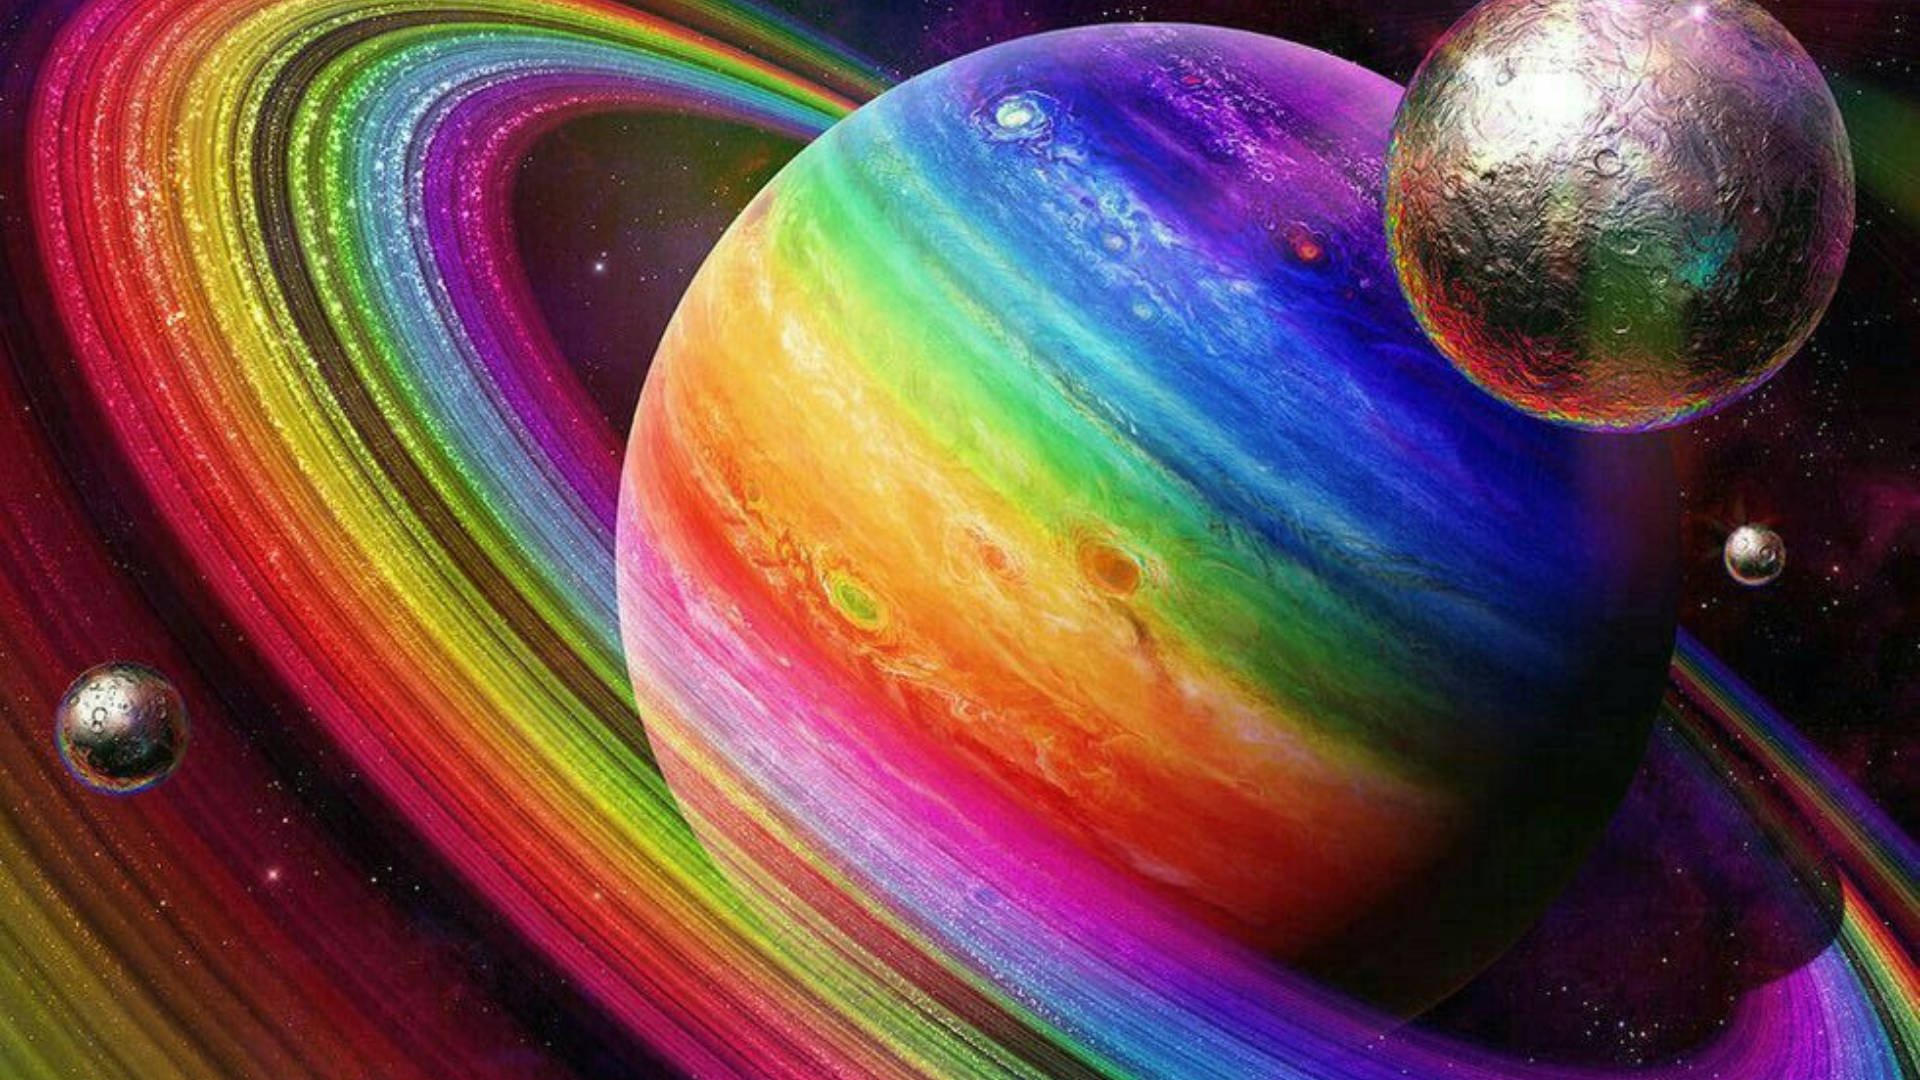 A Planet In Rainbow Galaxy Design